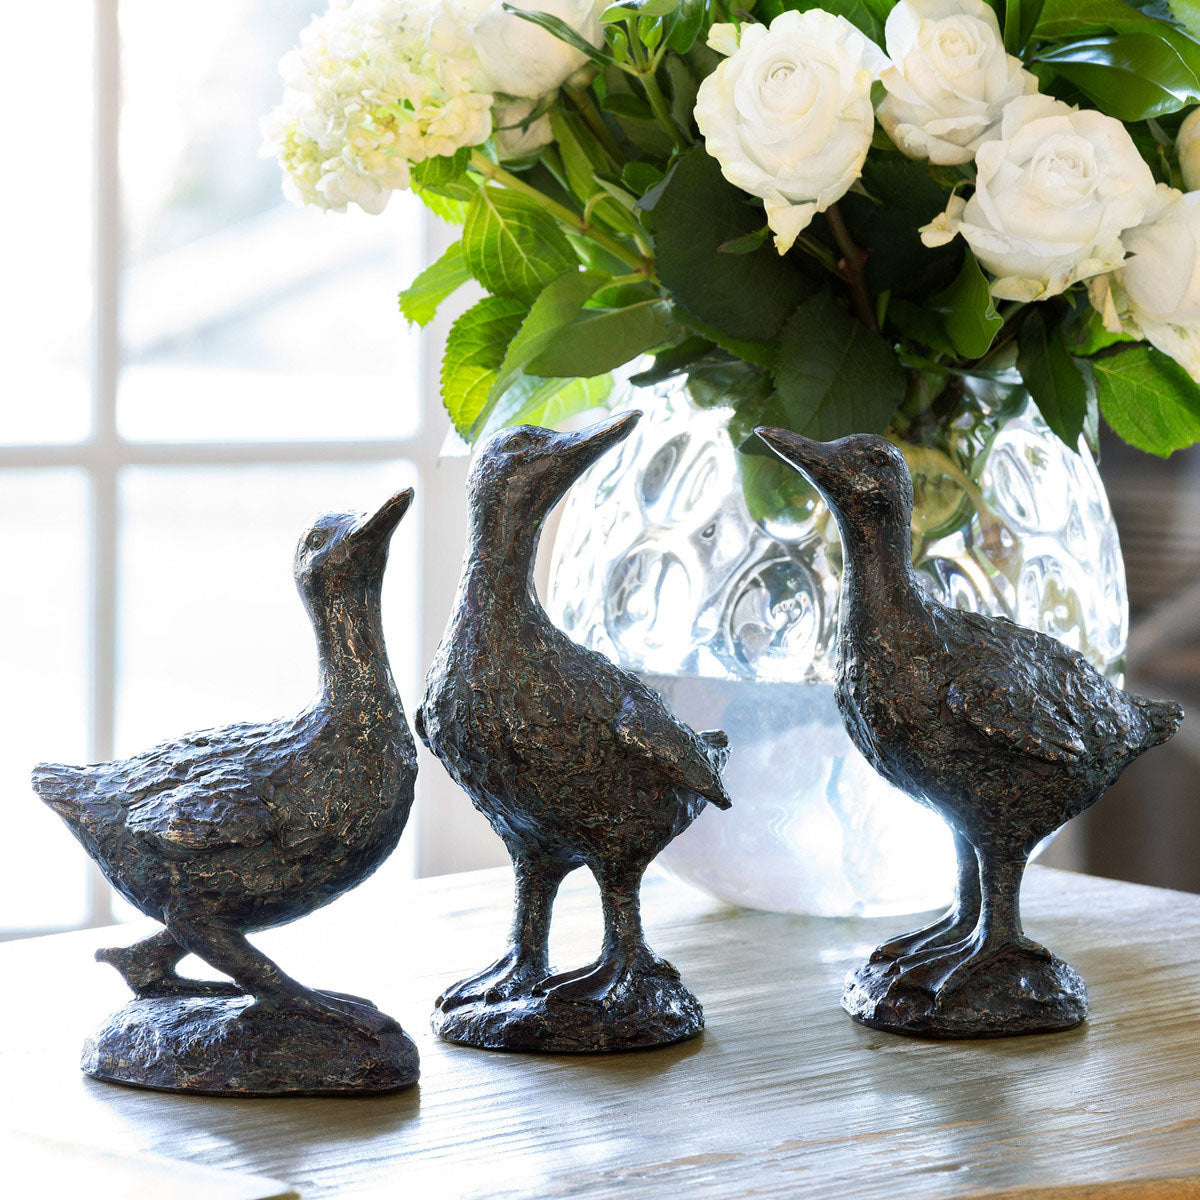 The Bronze Three Ducks